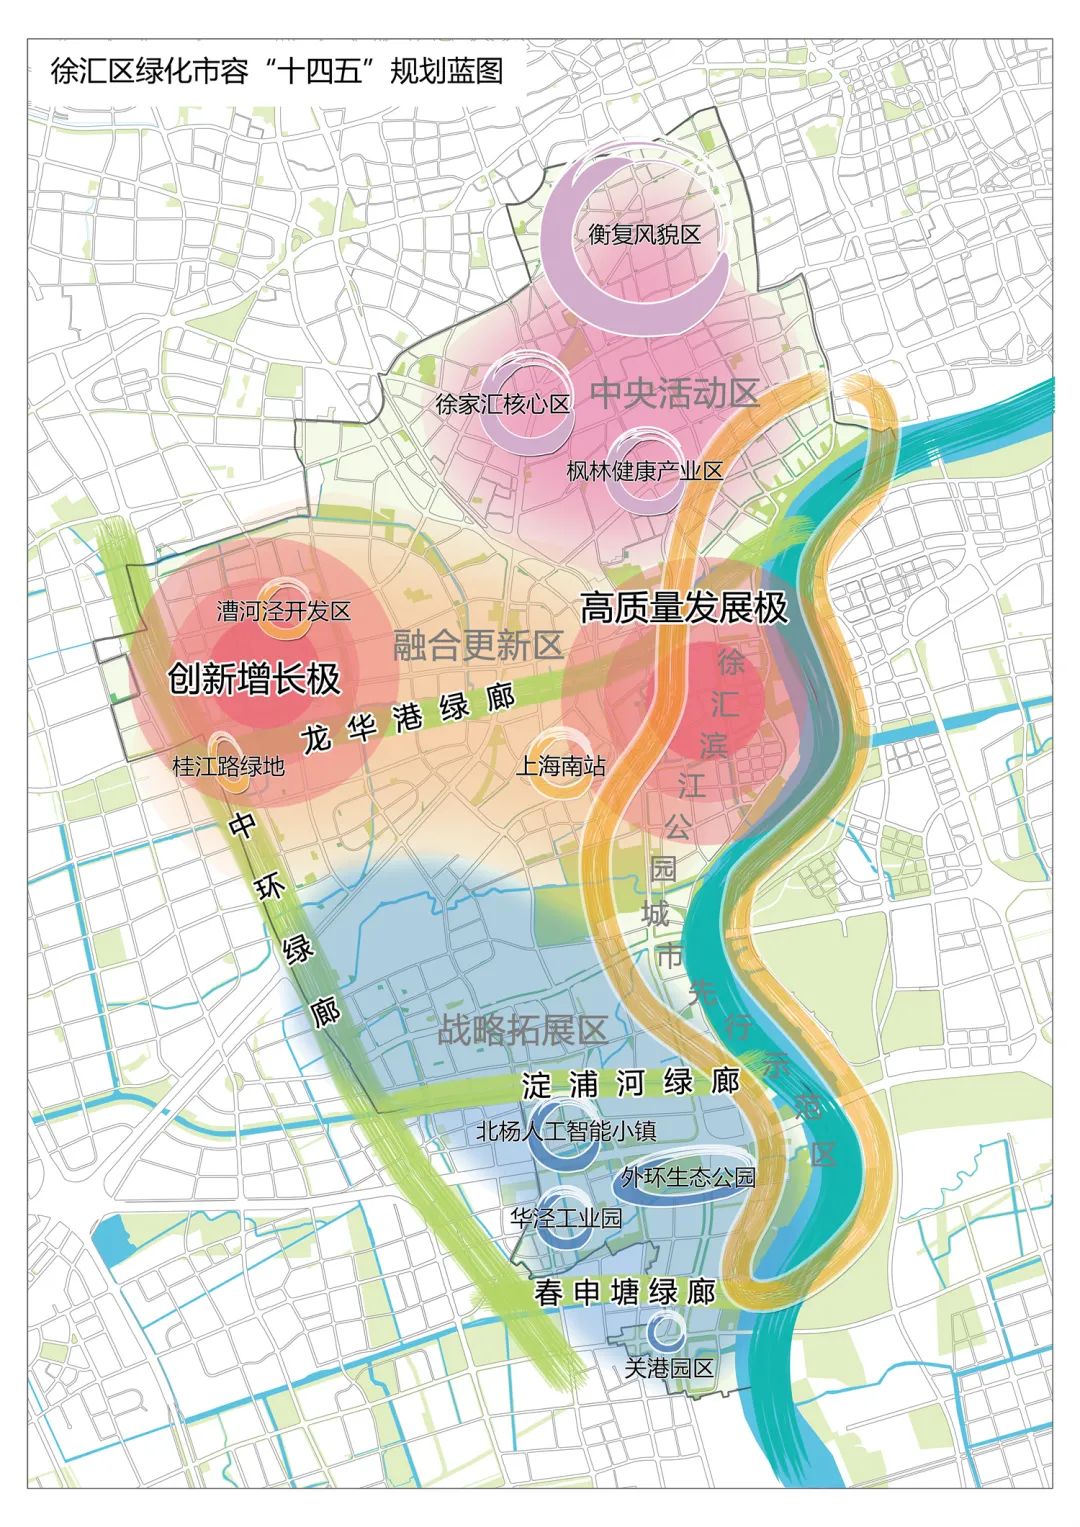 徐汇区2035总体规划图片